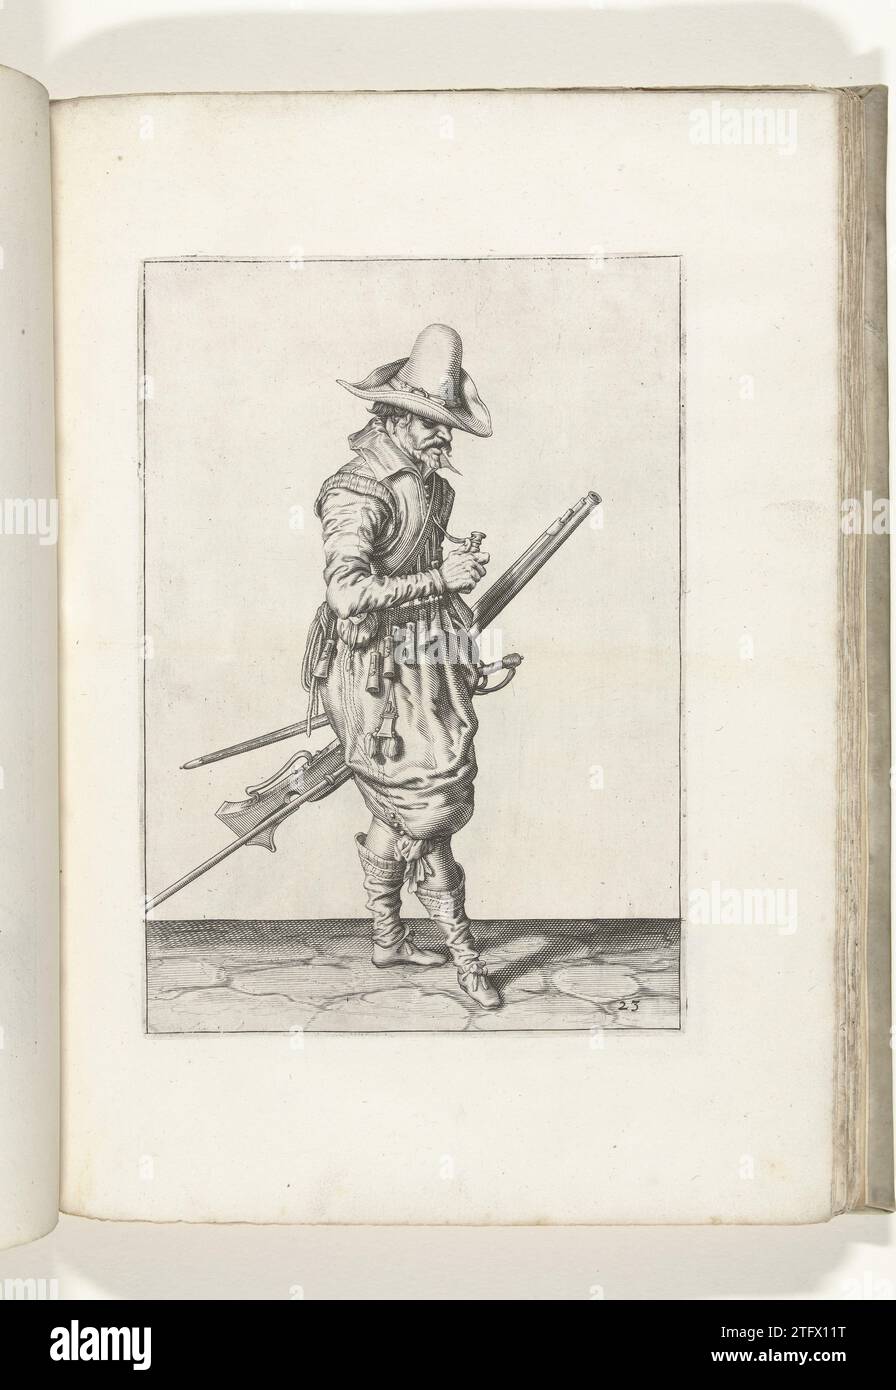 Soldat mit einer Muskete, die eine Pulvergröße öffnet (Nr. 23), ca. 1600, 1597 – 1607 Ein Soldat, rechts, der eine Muskete (eine bestimmte Art Schusswaffe) mit der linken Hand am linken Oberschenkel (eine bestimmte Art Schusswaffe) hält, die nach oben zeigt (Nr. 23), ca. 1600. In seiner linken Hand, neben der Muskete auch eine Furket (Muskettengabel). Mit seiner rechten Hand öffnet er einen der Puderfreunde auf seinem bandelier. Platte 23 in der Anleitung zur Handhabung der Muskete: Corte Initiation auf dem Figuerliicke-Bild, so sehr auf dem rechten Ghebruyck Vant Musquet. Teil der Abbildungen in: J Stockfoto